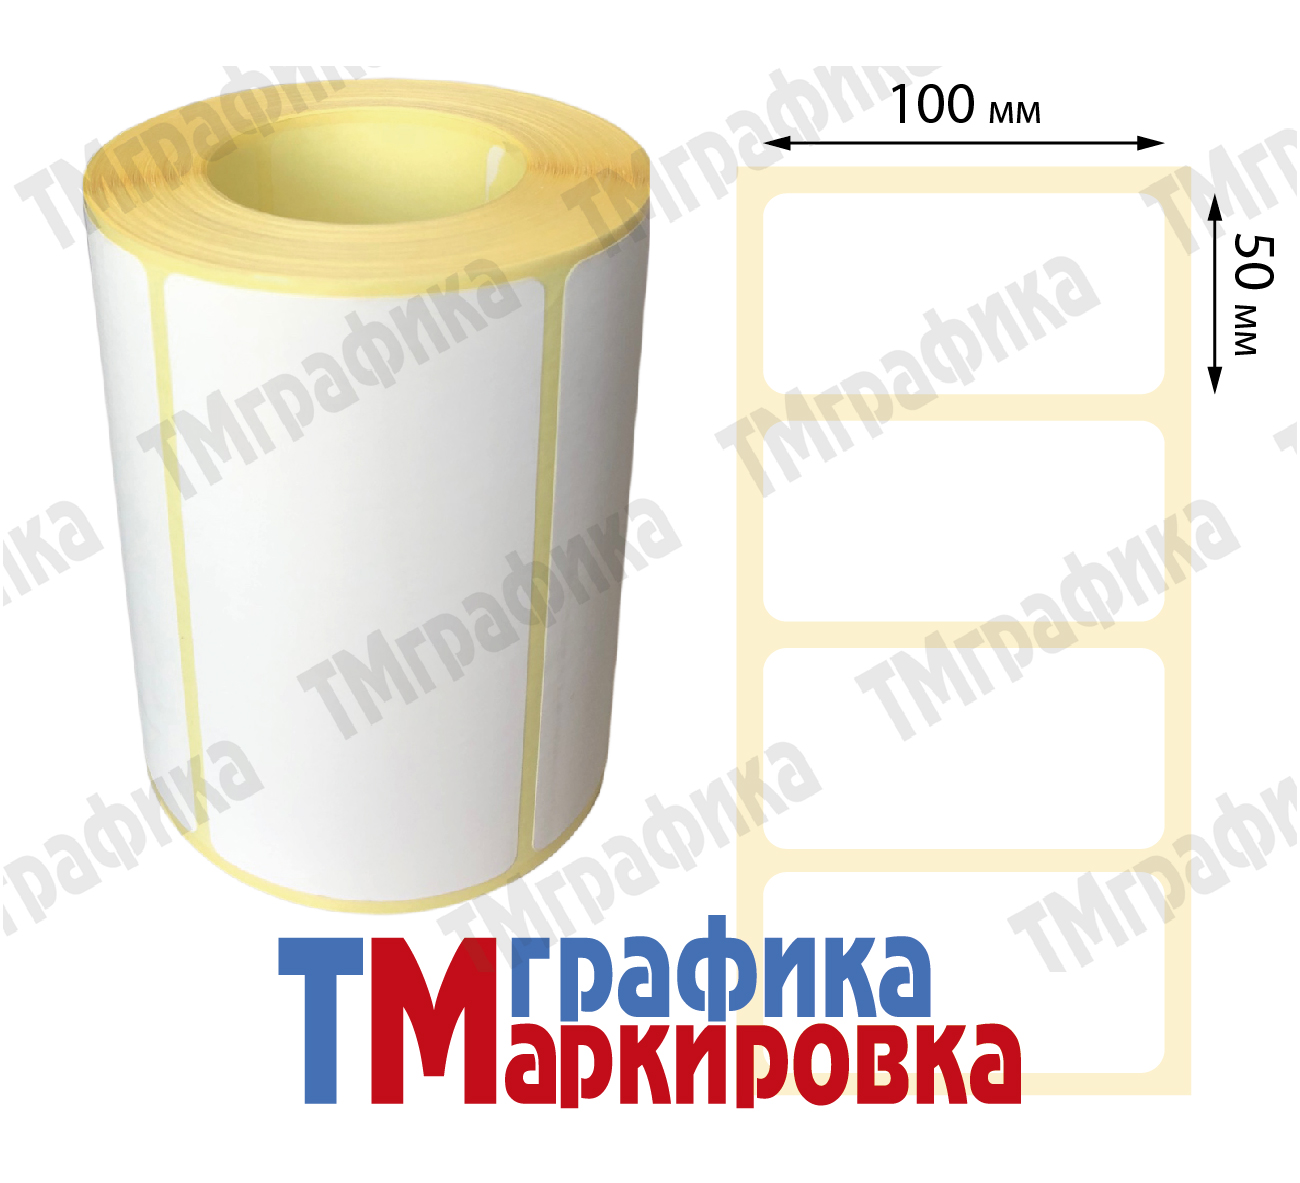 100х50 мм 500 шт. полипропиленовые Термотрансферные этикетки - 466.24 руб.